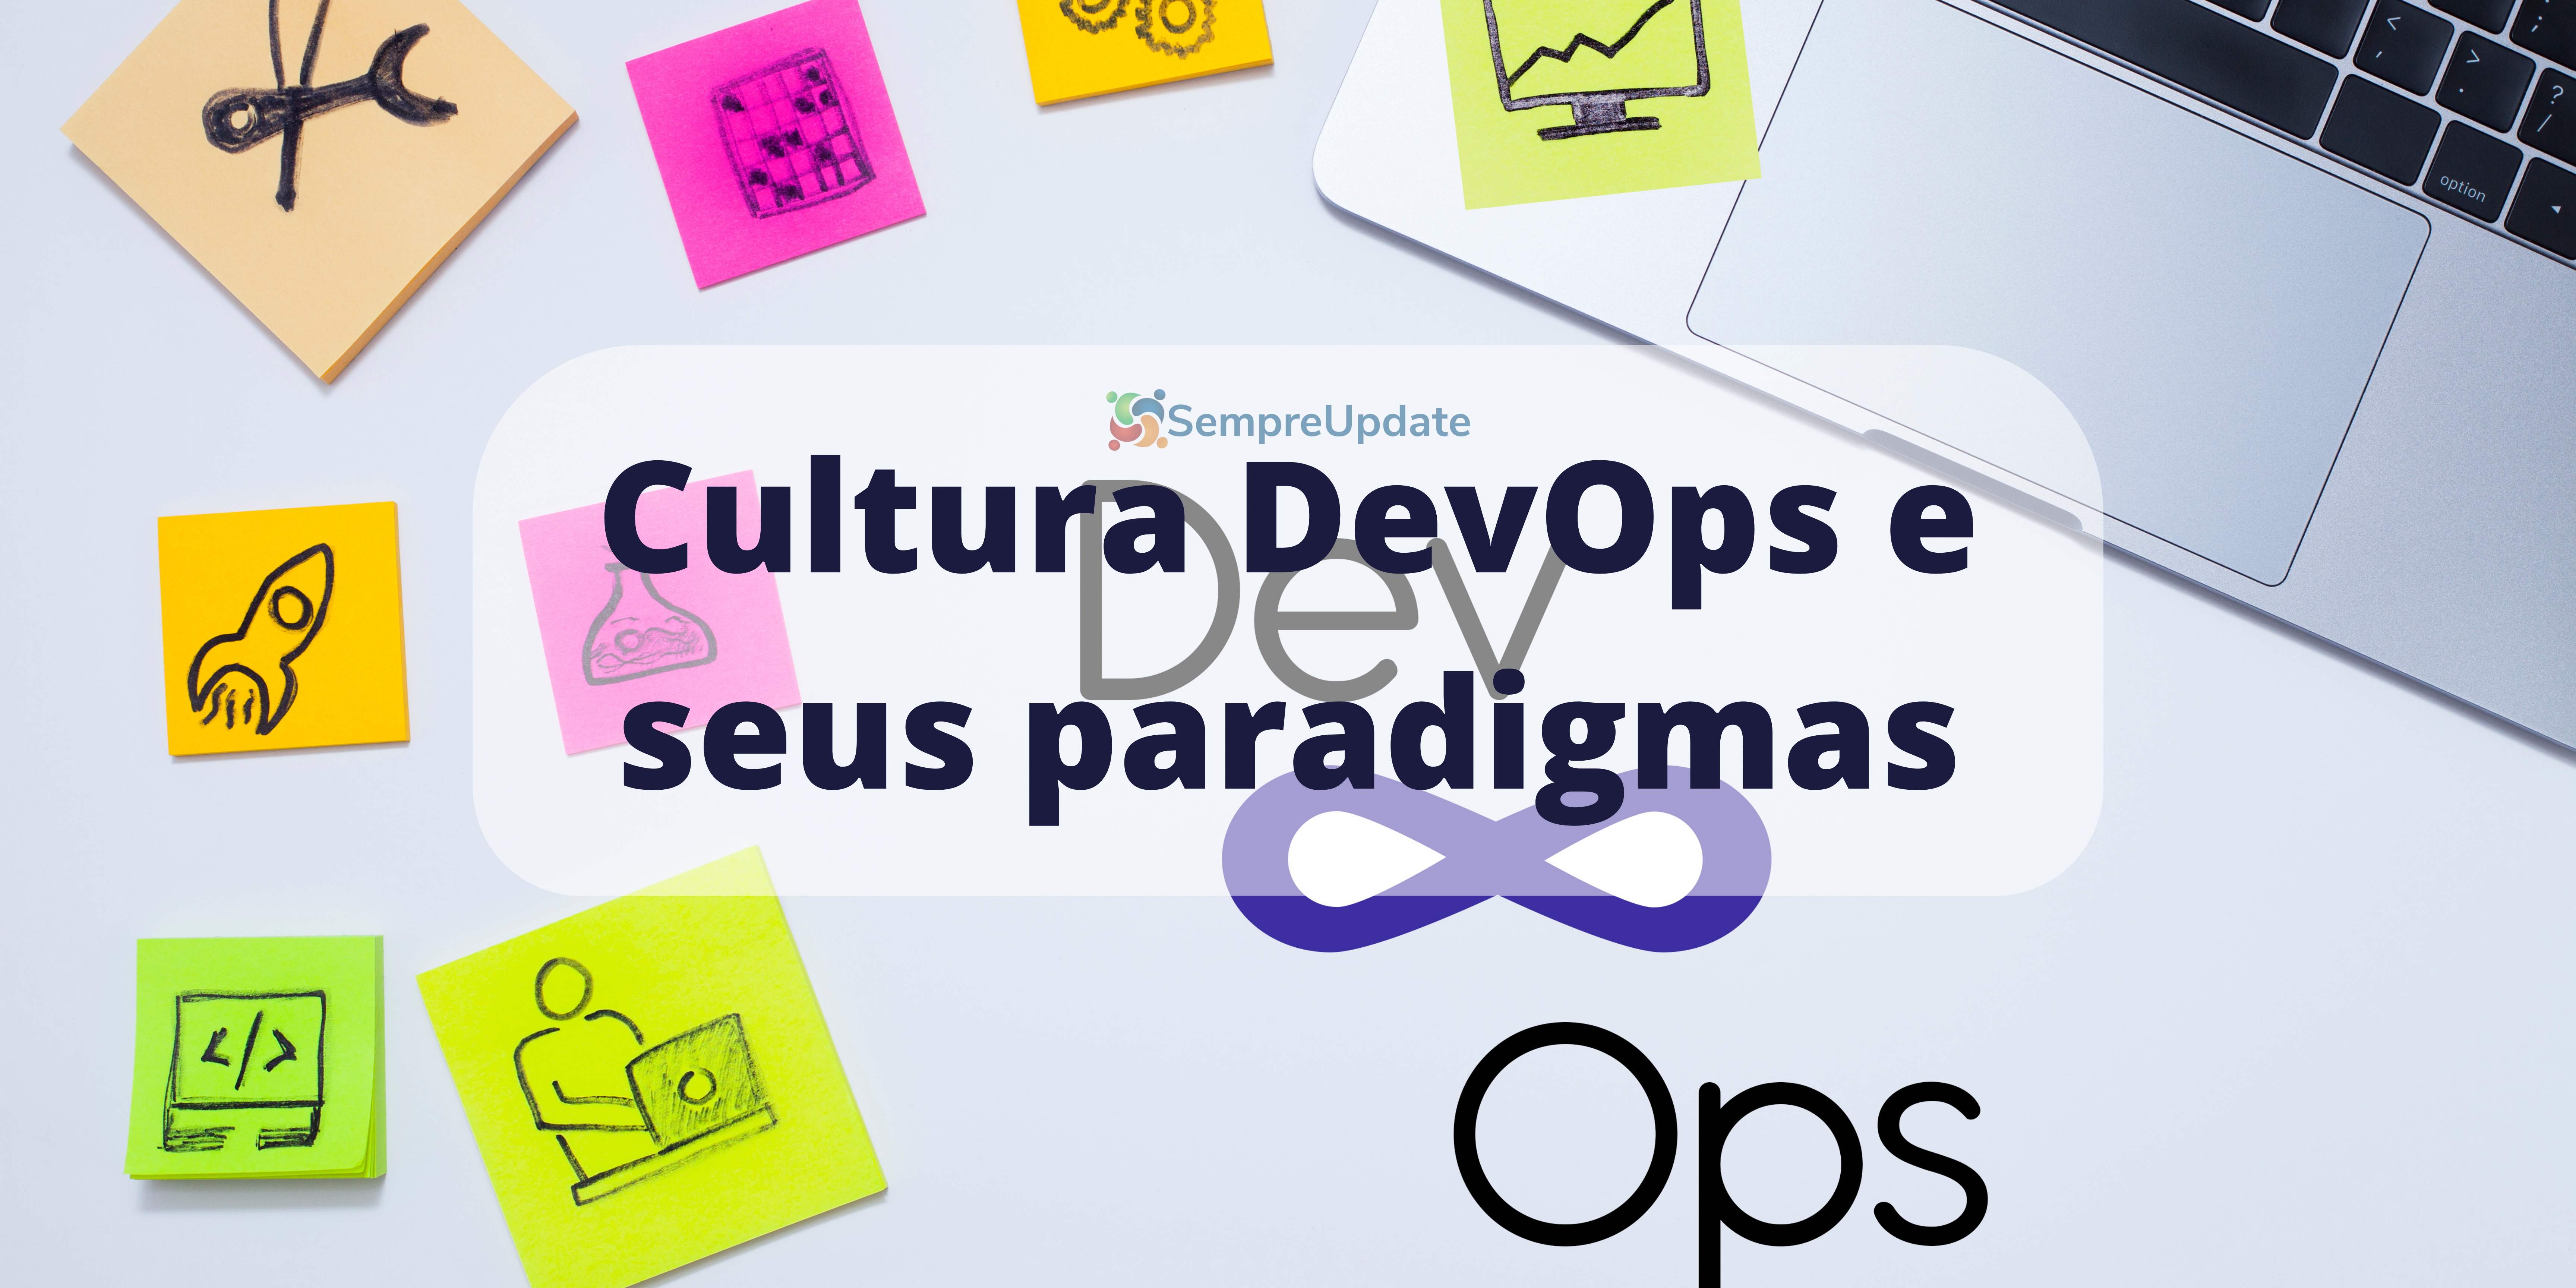 Entendendo a cultura DevOps e seus paradigmas